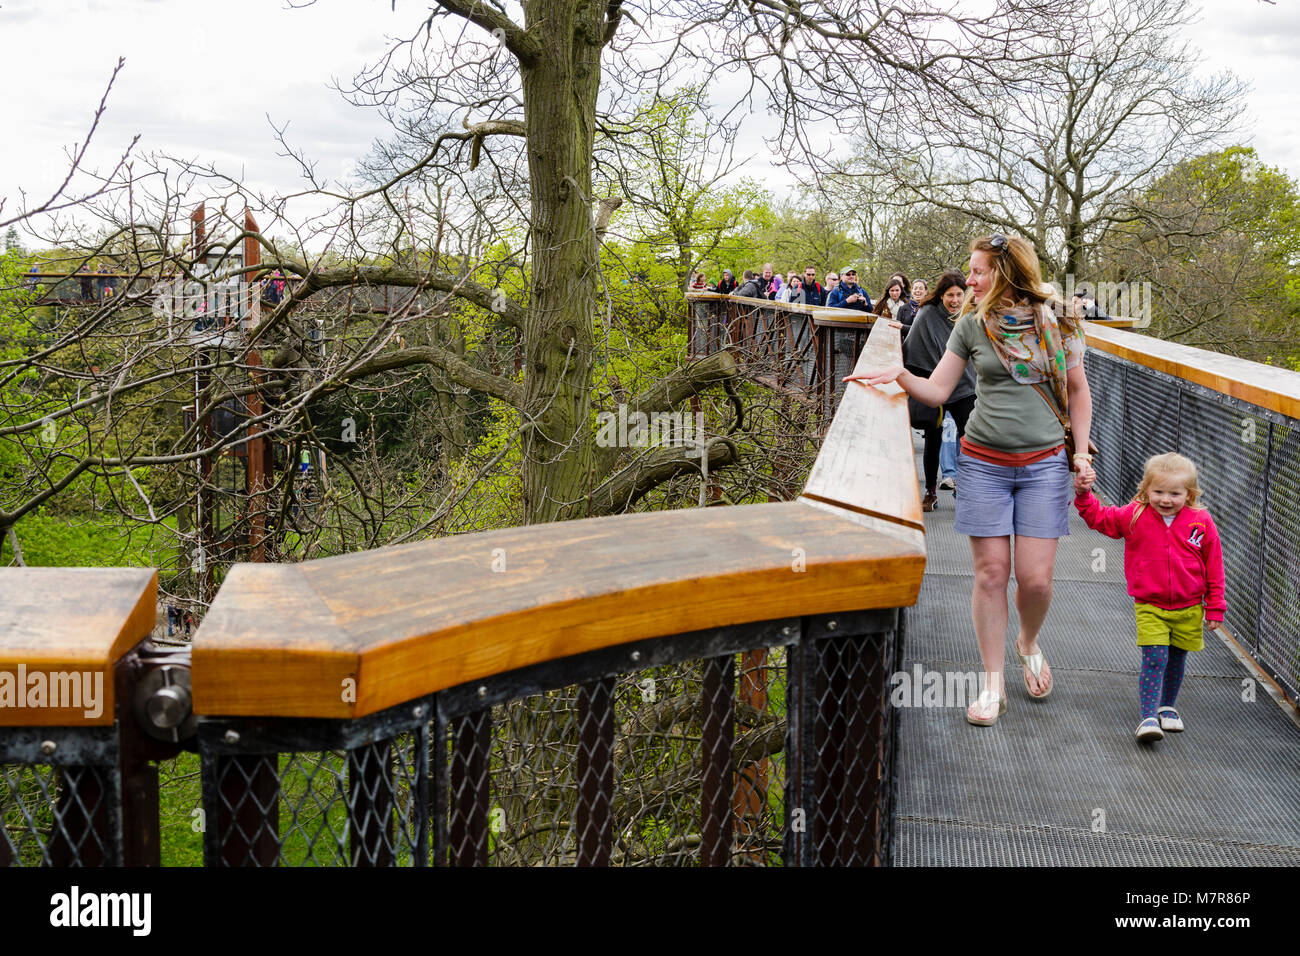 Londres, Royaume-Uni - 18 avril, 2014. Treetop Walkway à Kew Botanic Gardens. La passerelle permet aux visiteurs de marcher à travers 200 mètres de couvert forestier Banque D'Images